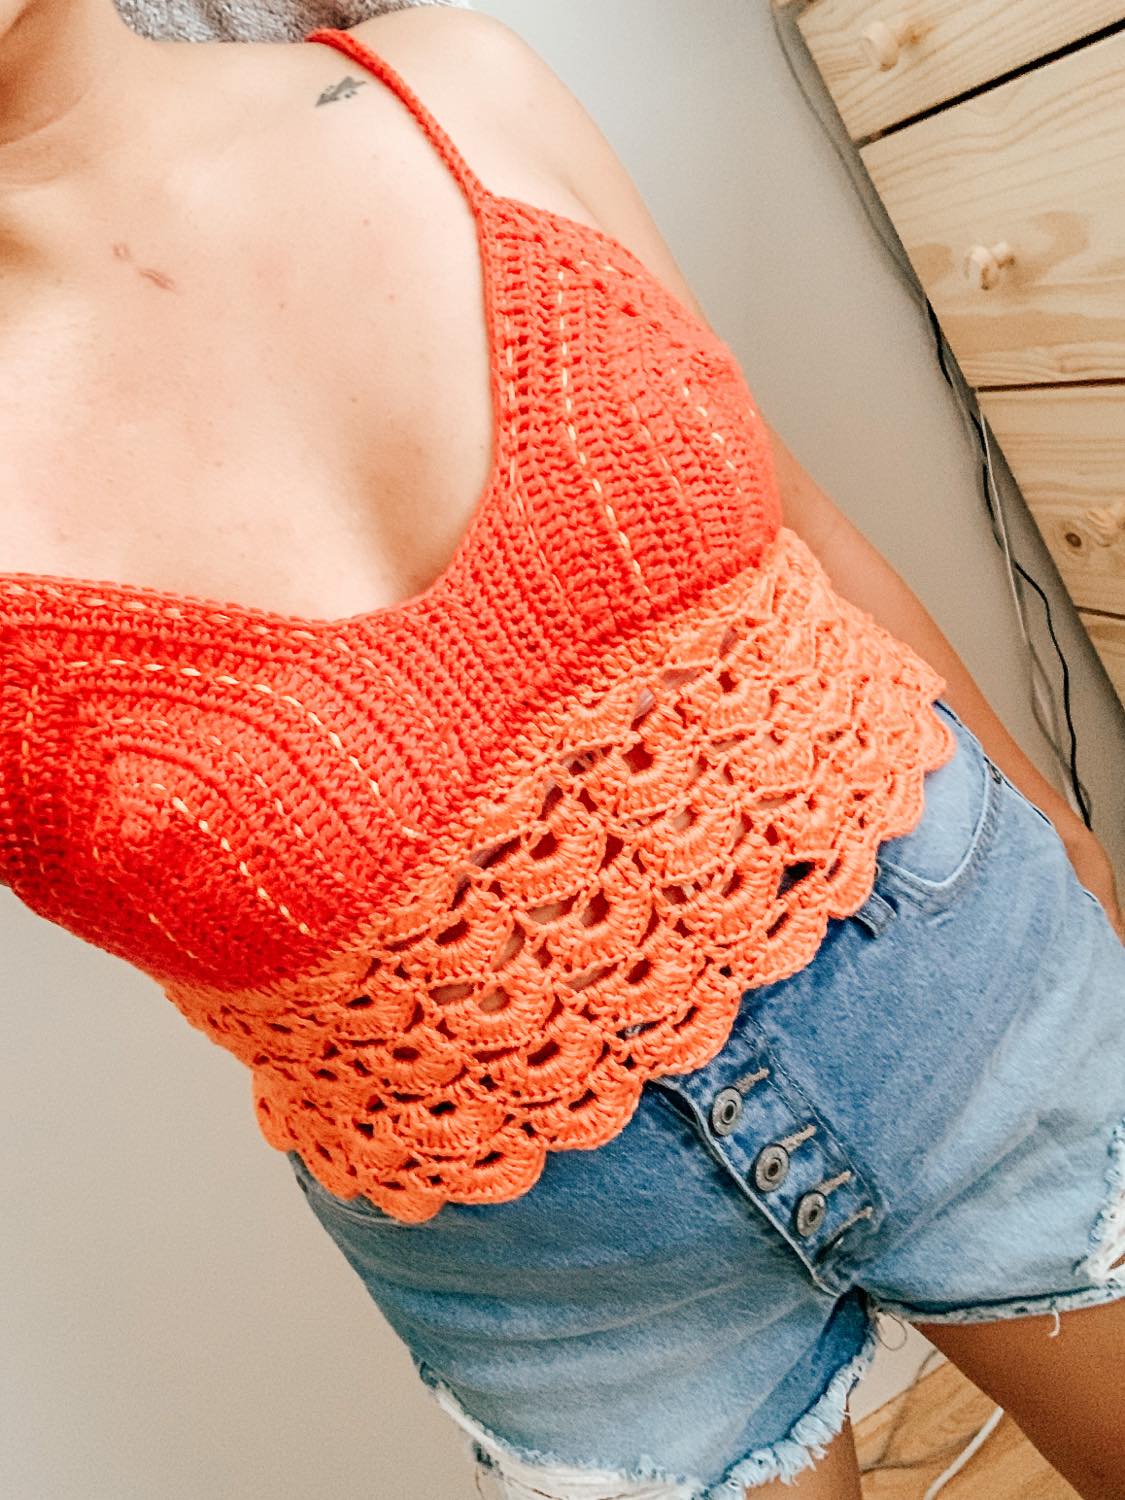 Crochet Bralette - How to m the Sunrise Crochet Bralette (free